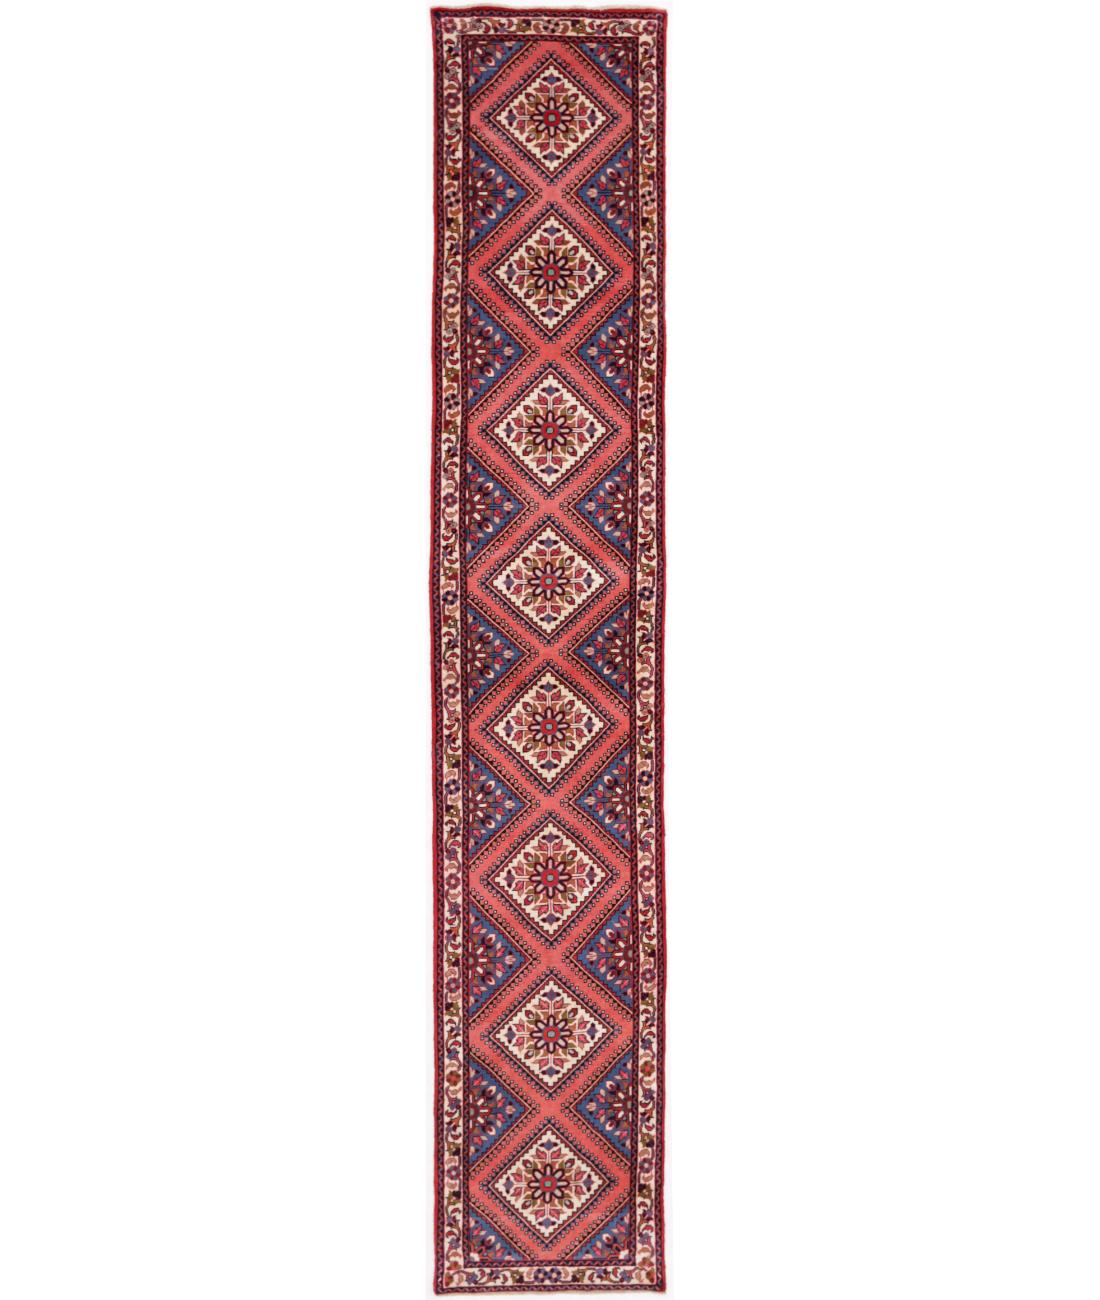 Hand Knotted Persian Bijar Wool Rug - 2'3'' x 13'0'' 2' 3" X 13' 0" ( 69 X 396 ) / Pink / Ivory